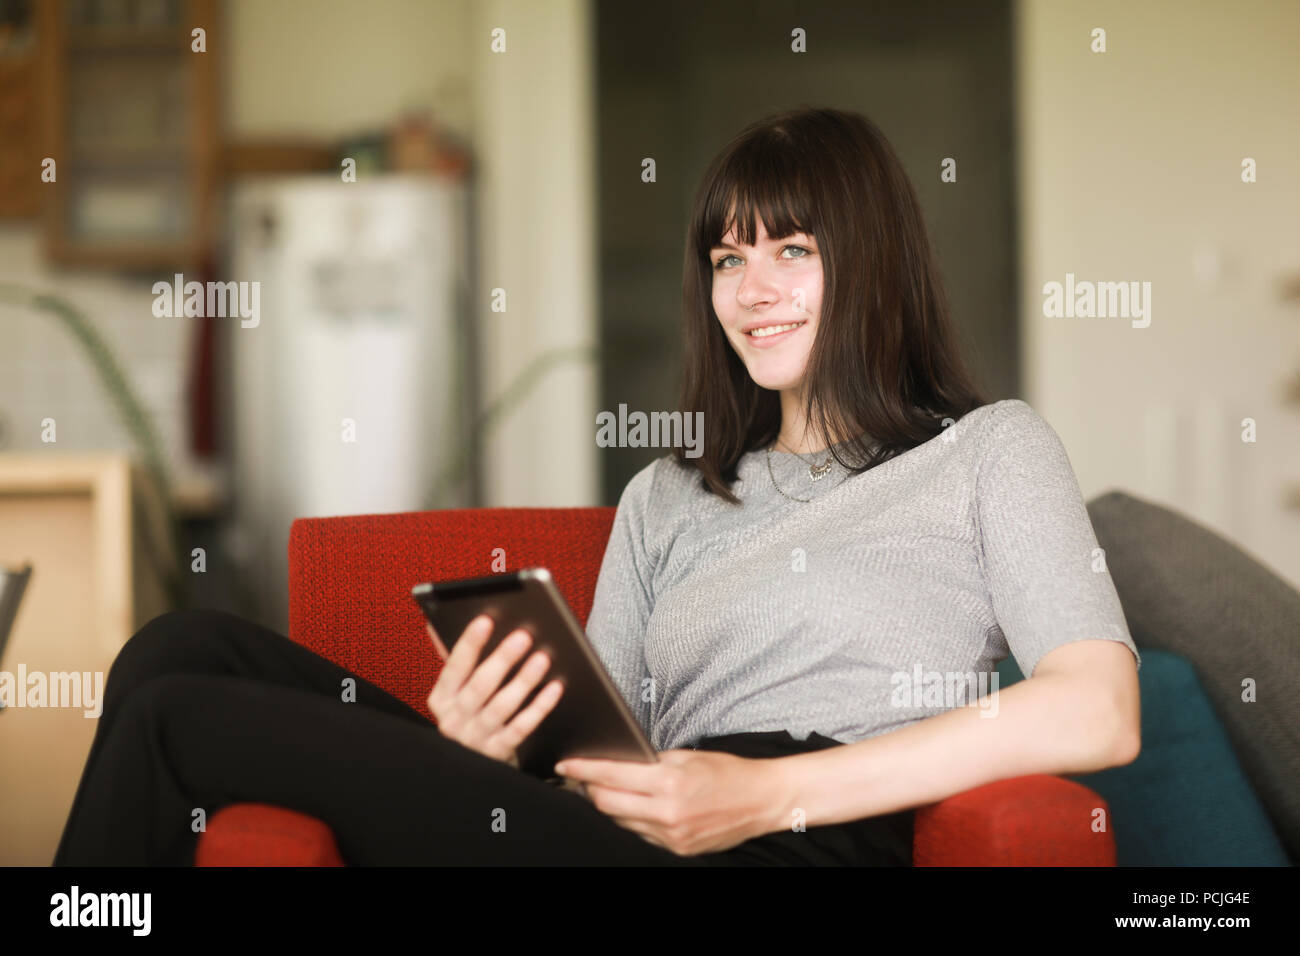 Femme assise sur un fauteuil à l'aide d'une tablette numérique Banque D'Images